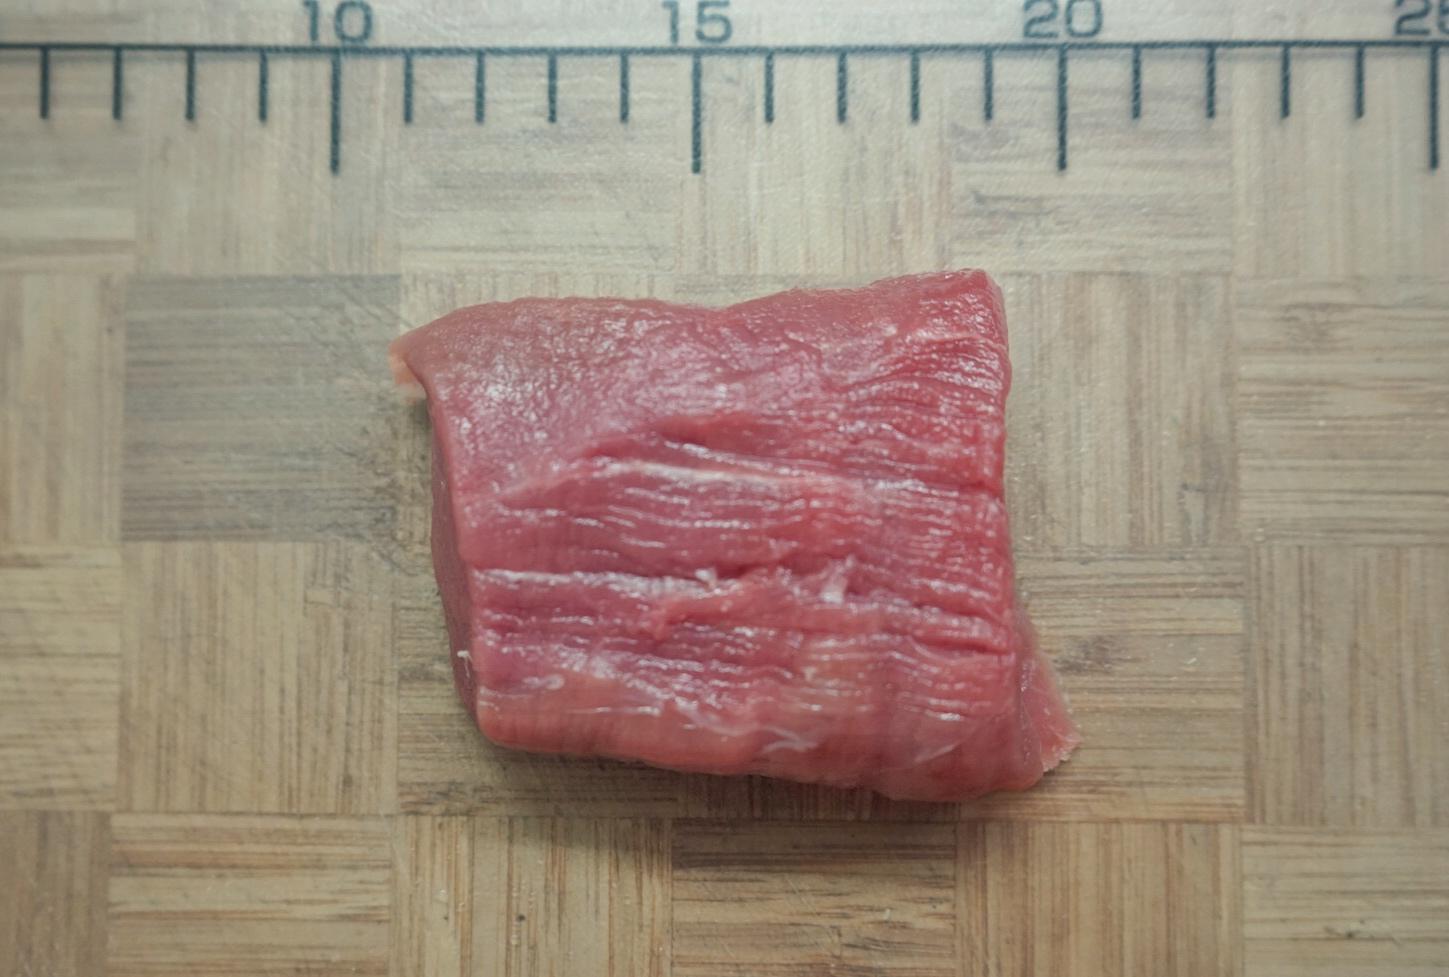 肉的纹理怎么切看图解，猪肉横切的正确切法？